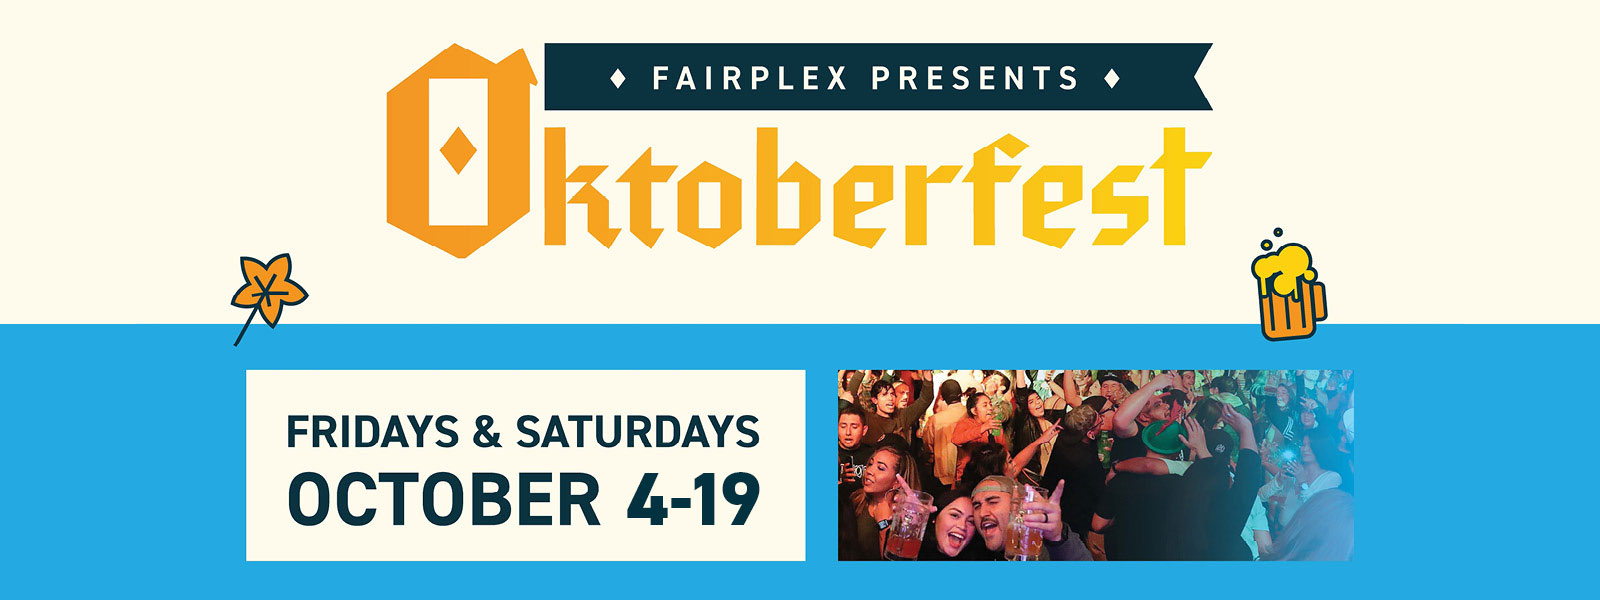 Fairplex Presents Oktoberfest Fairplex